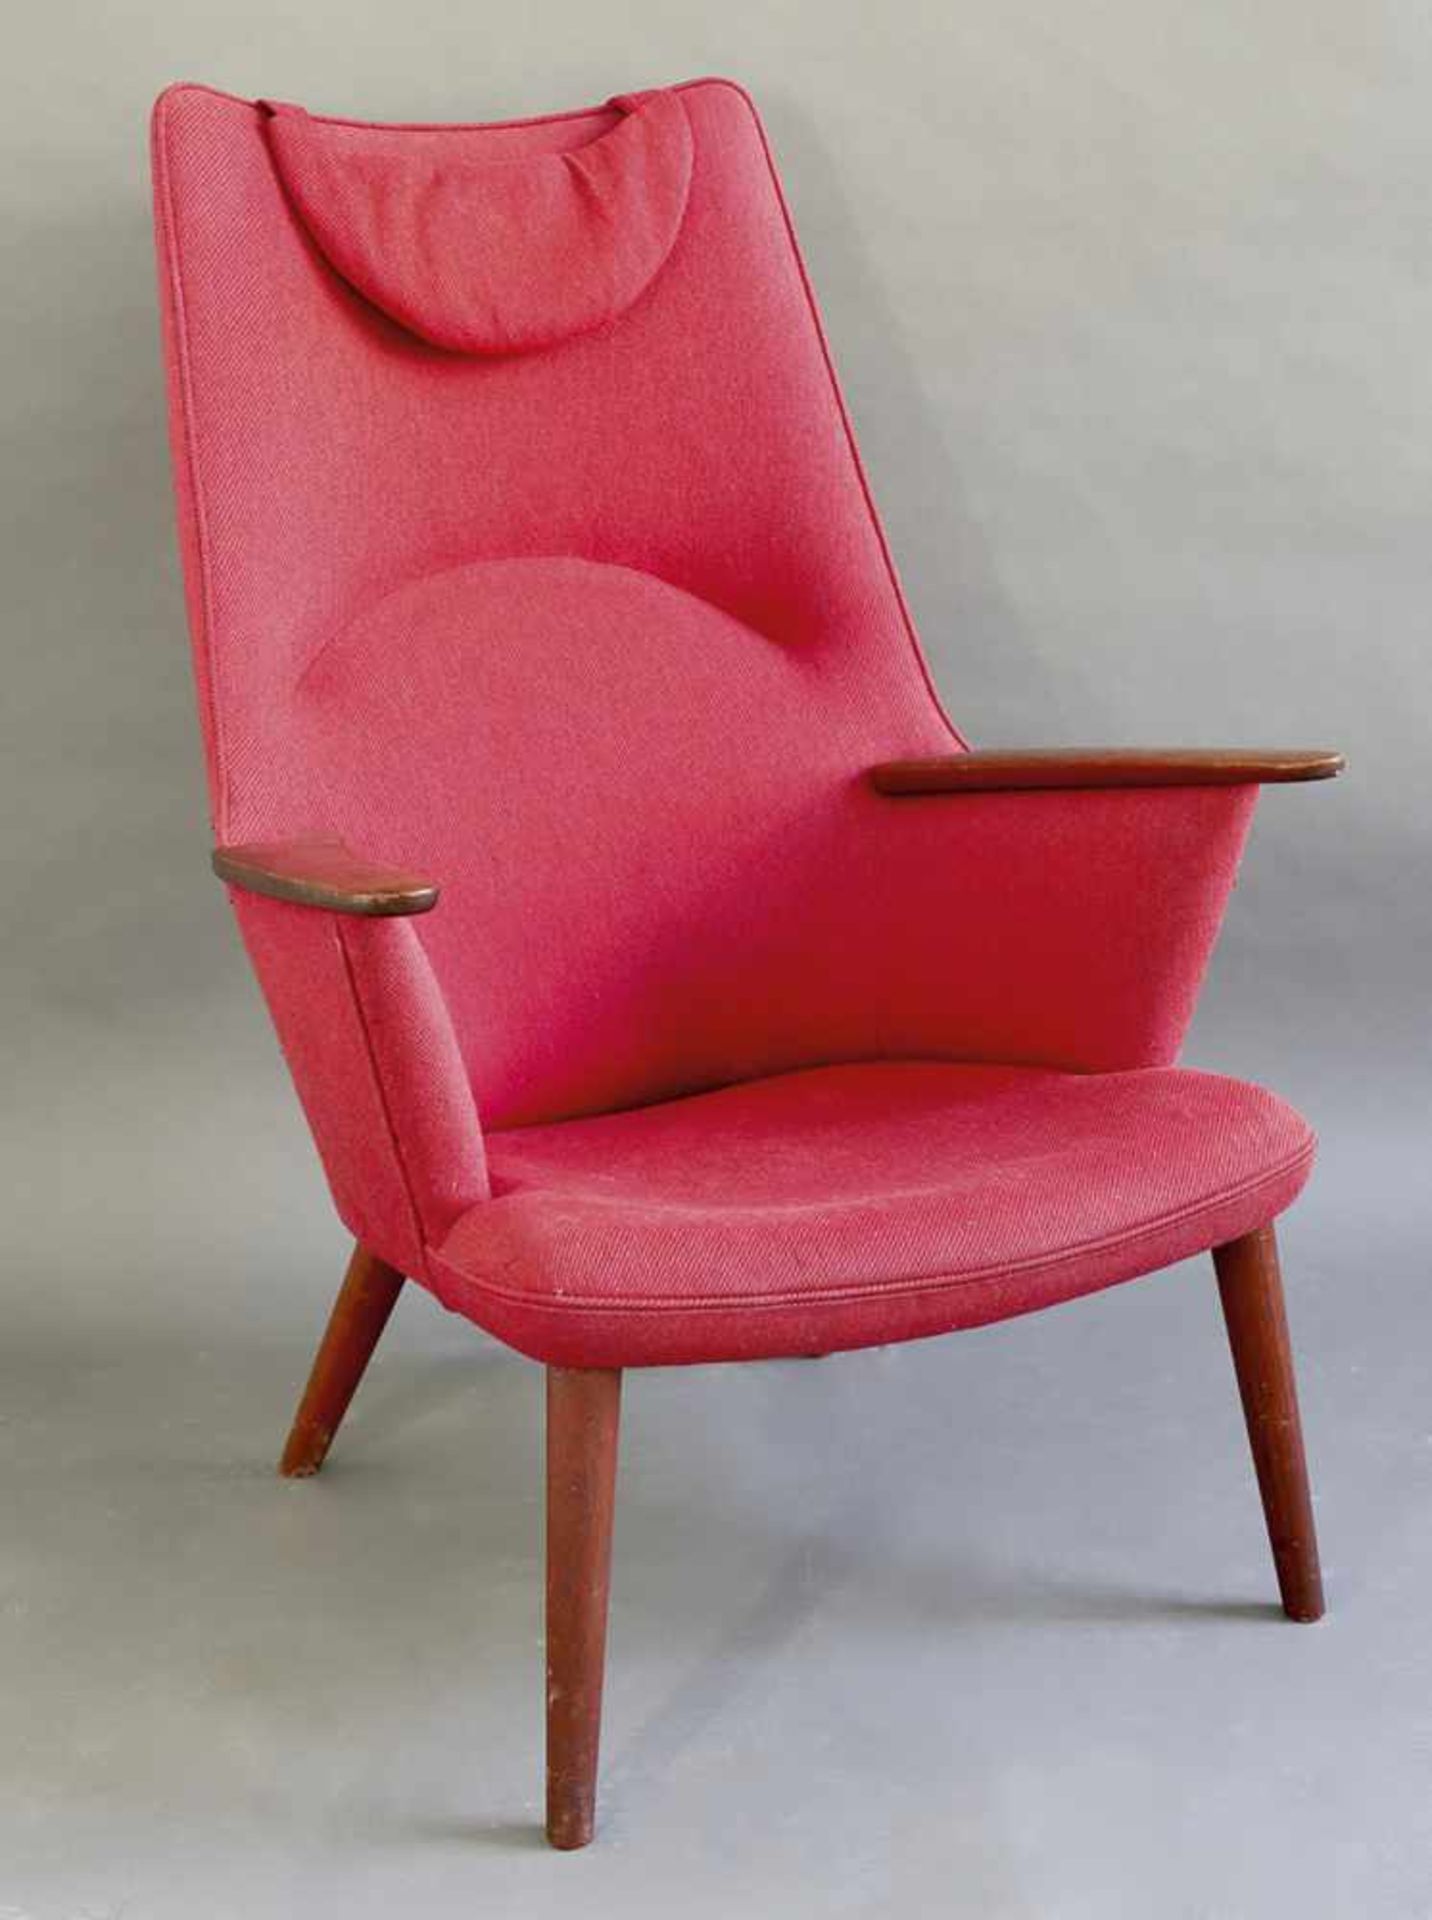 Hans J. WegnerAp Stolen, DänemarkHans J. Wegner Lounge Chair AP 27 Mama BearLounge chair model AP 27